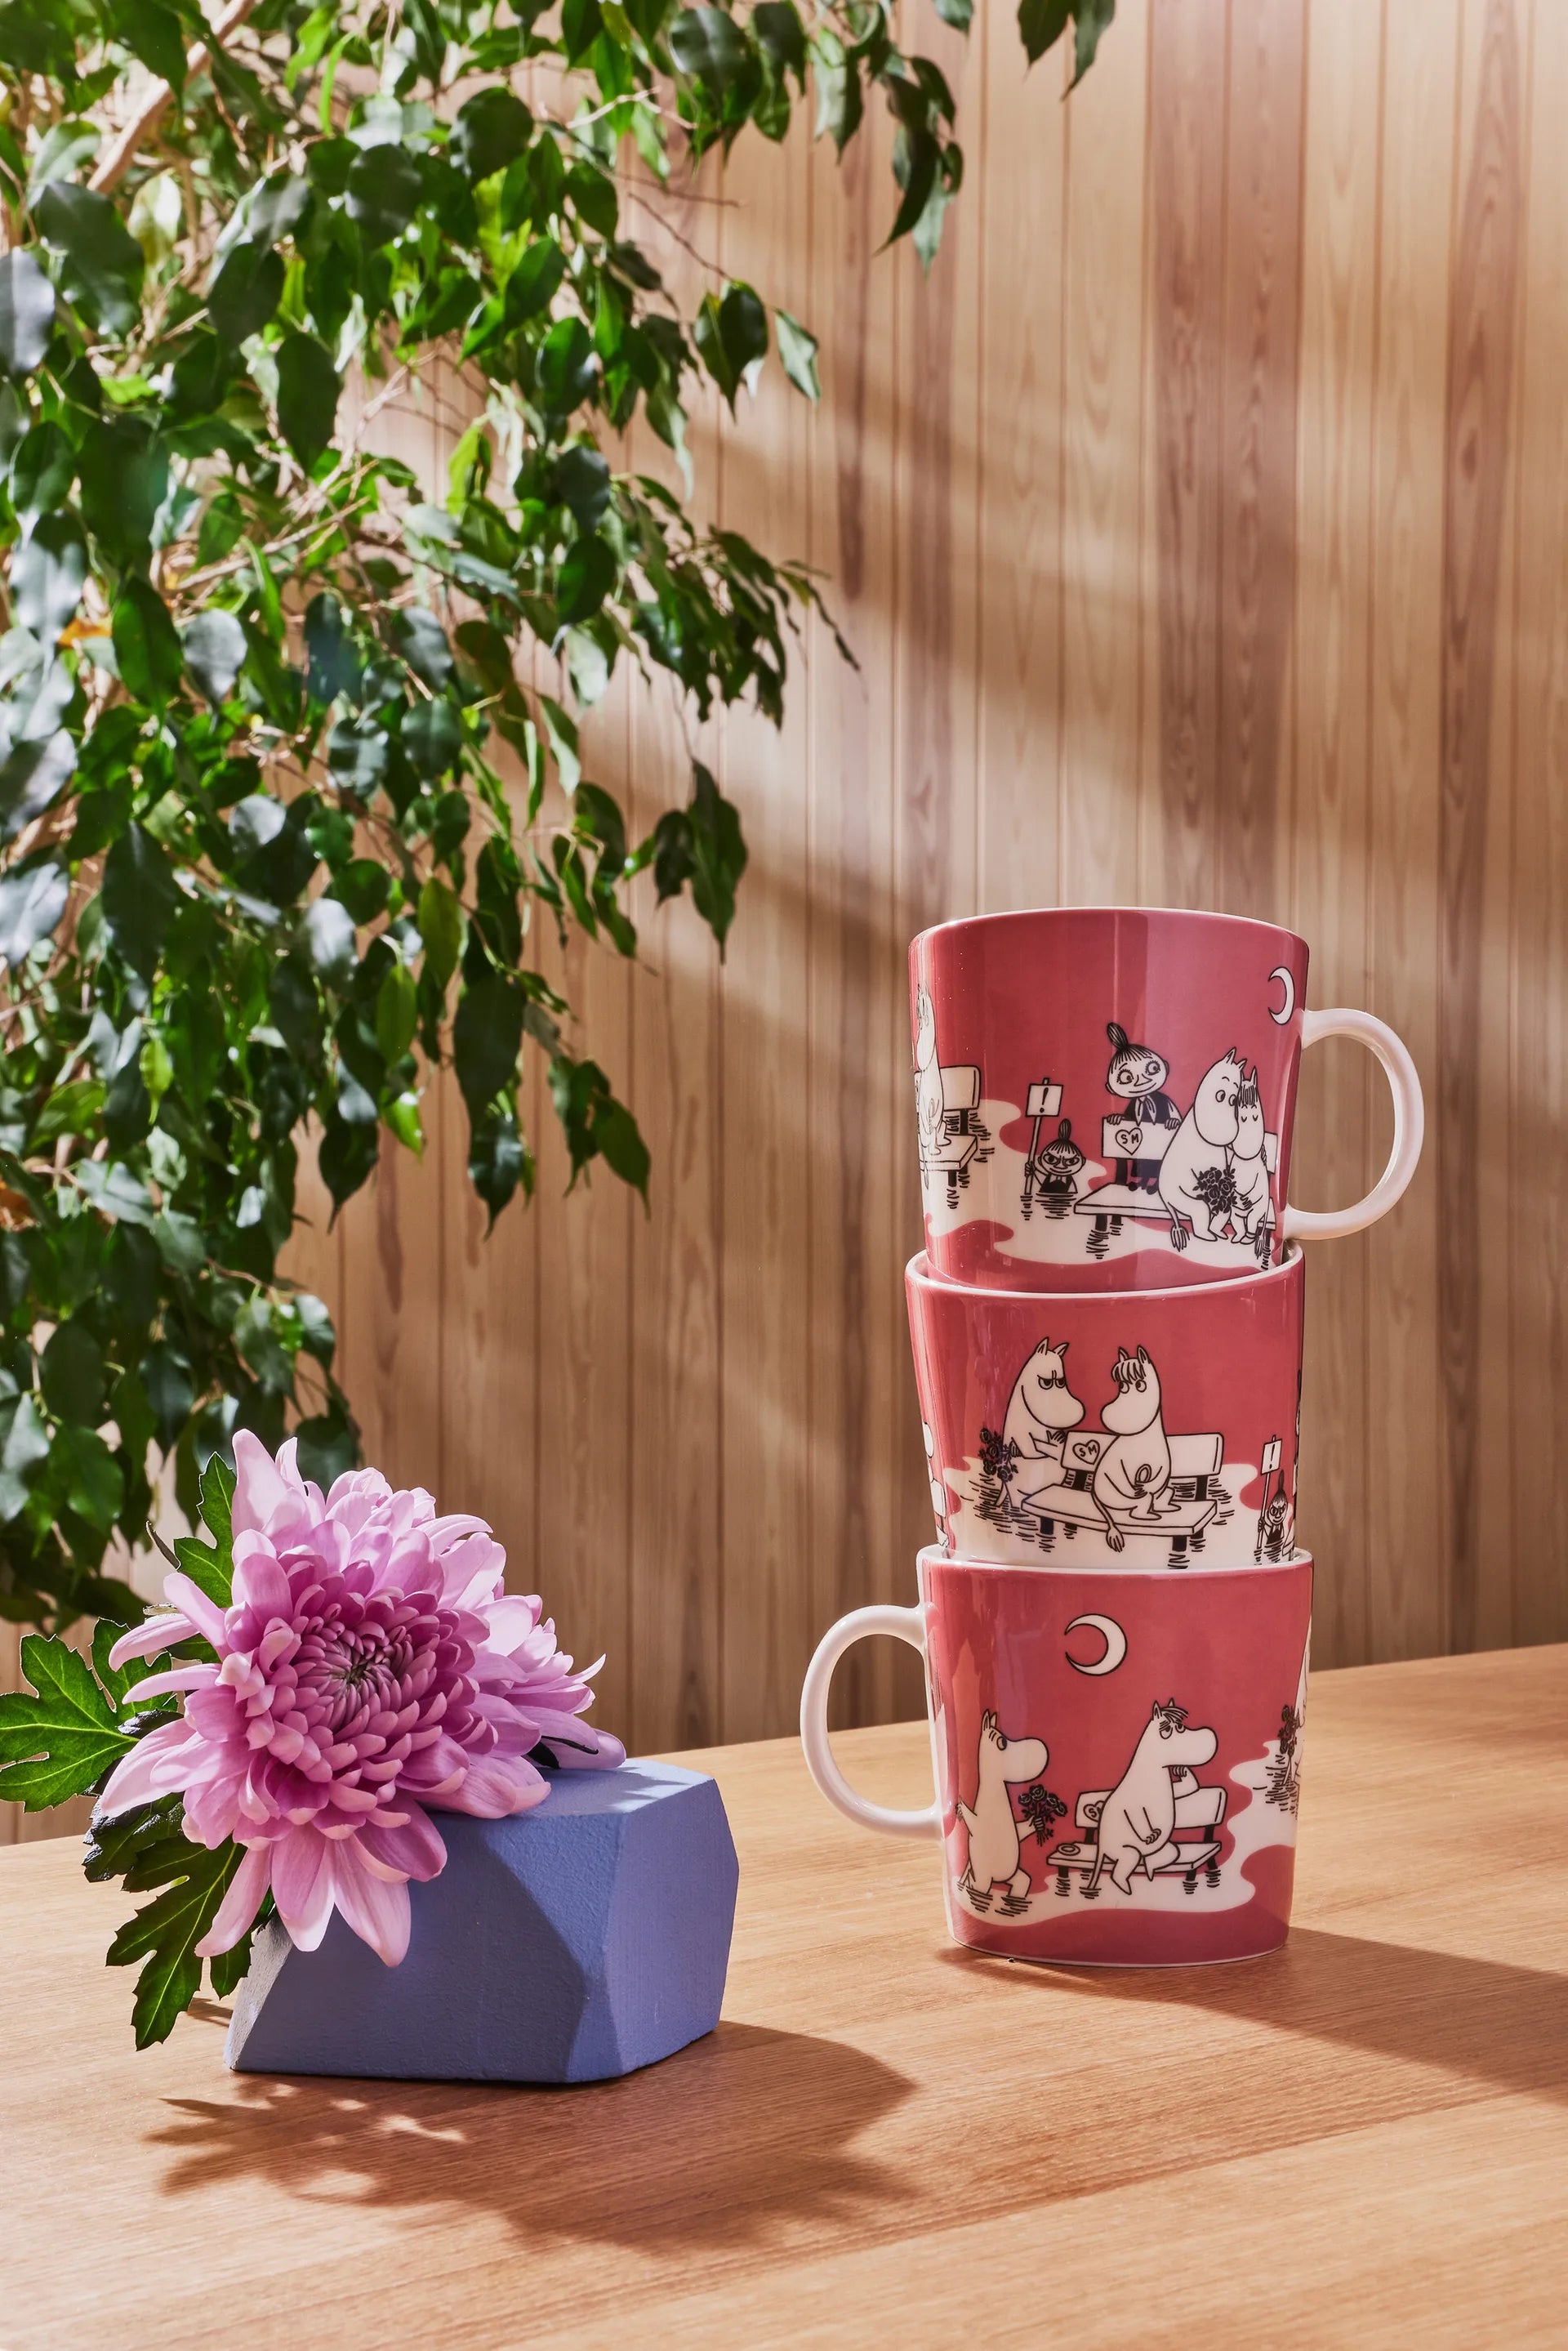 Moomin mug special LARGE 400ml Pink